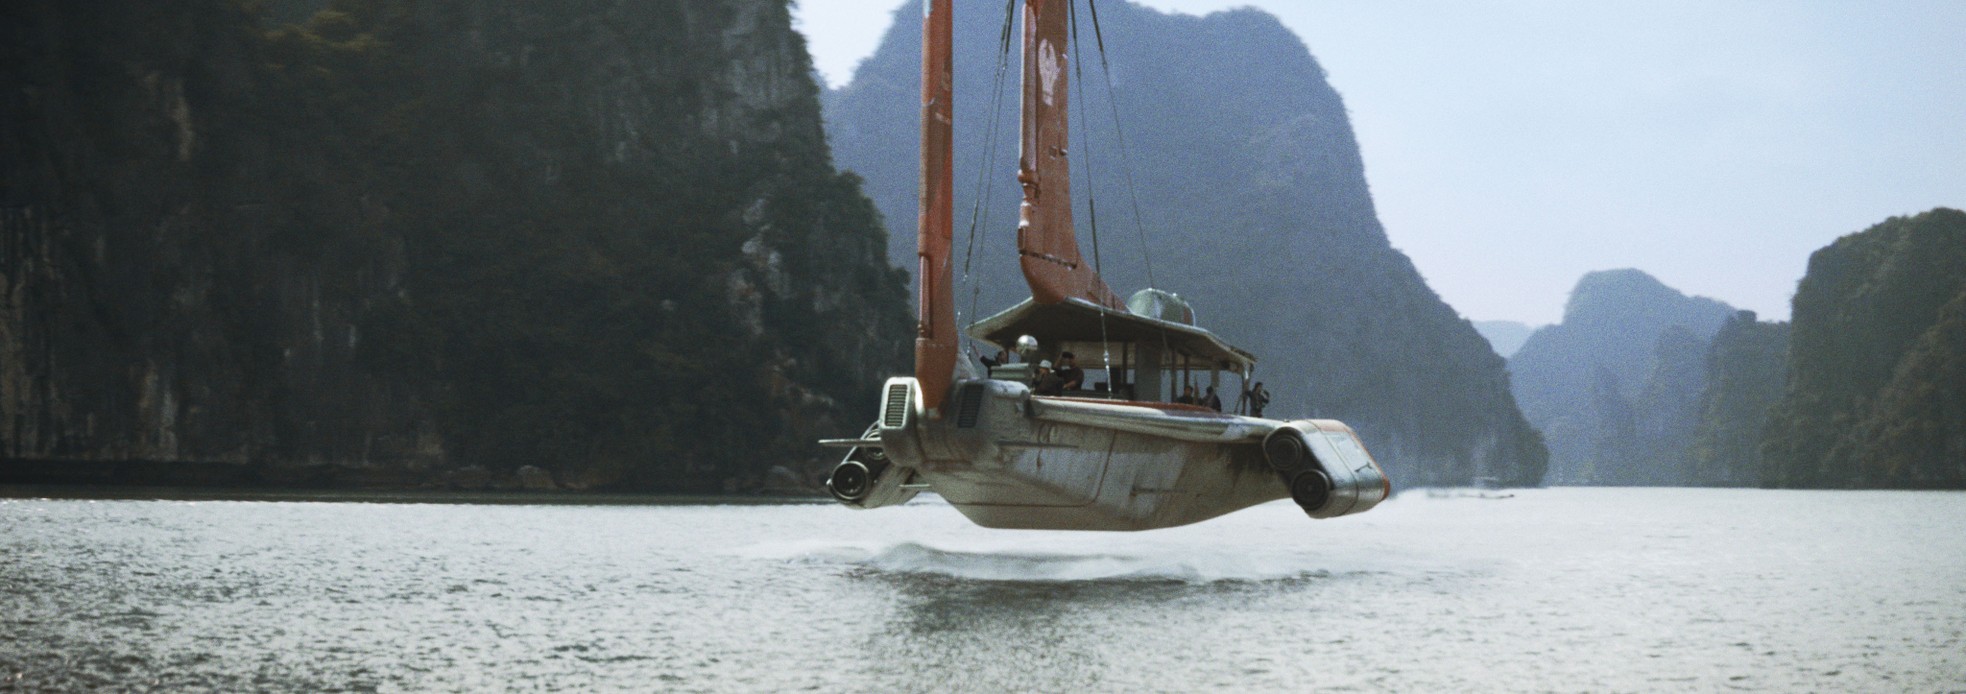 Ngô Thanh Vân, nước mắm, tiếng Việt và vịnh Hạ Long trong phim bom tấn Hollywood - Ảnh 2.